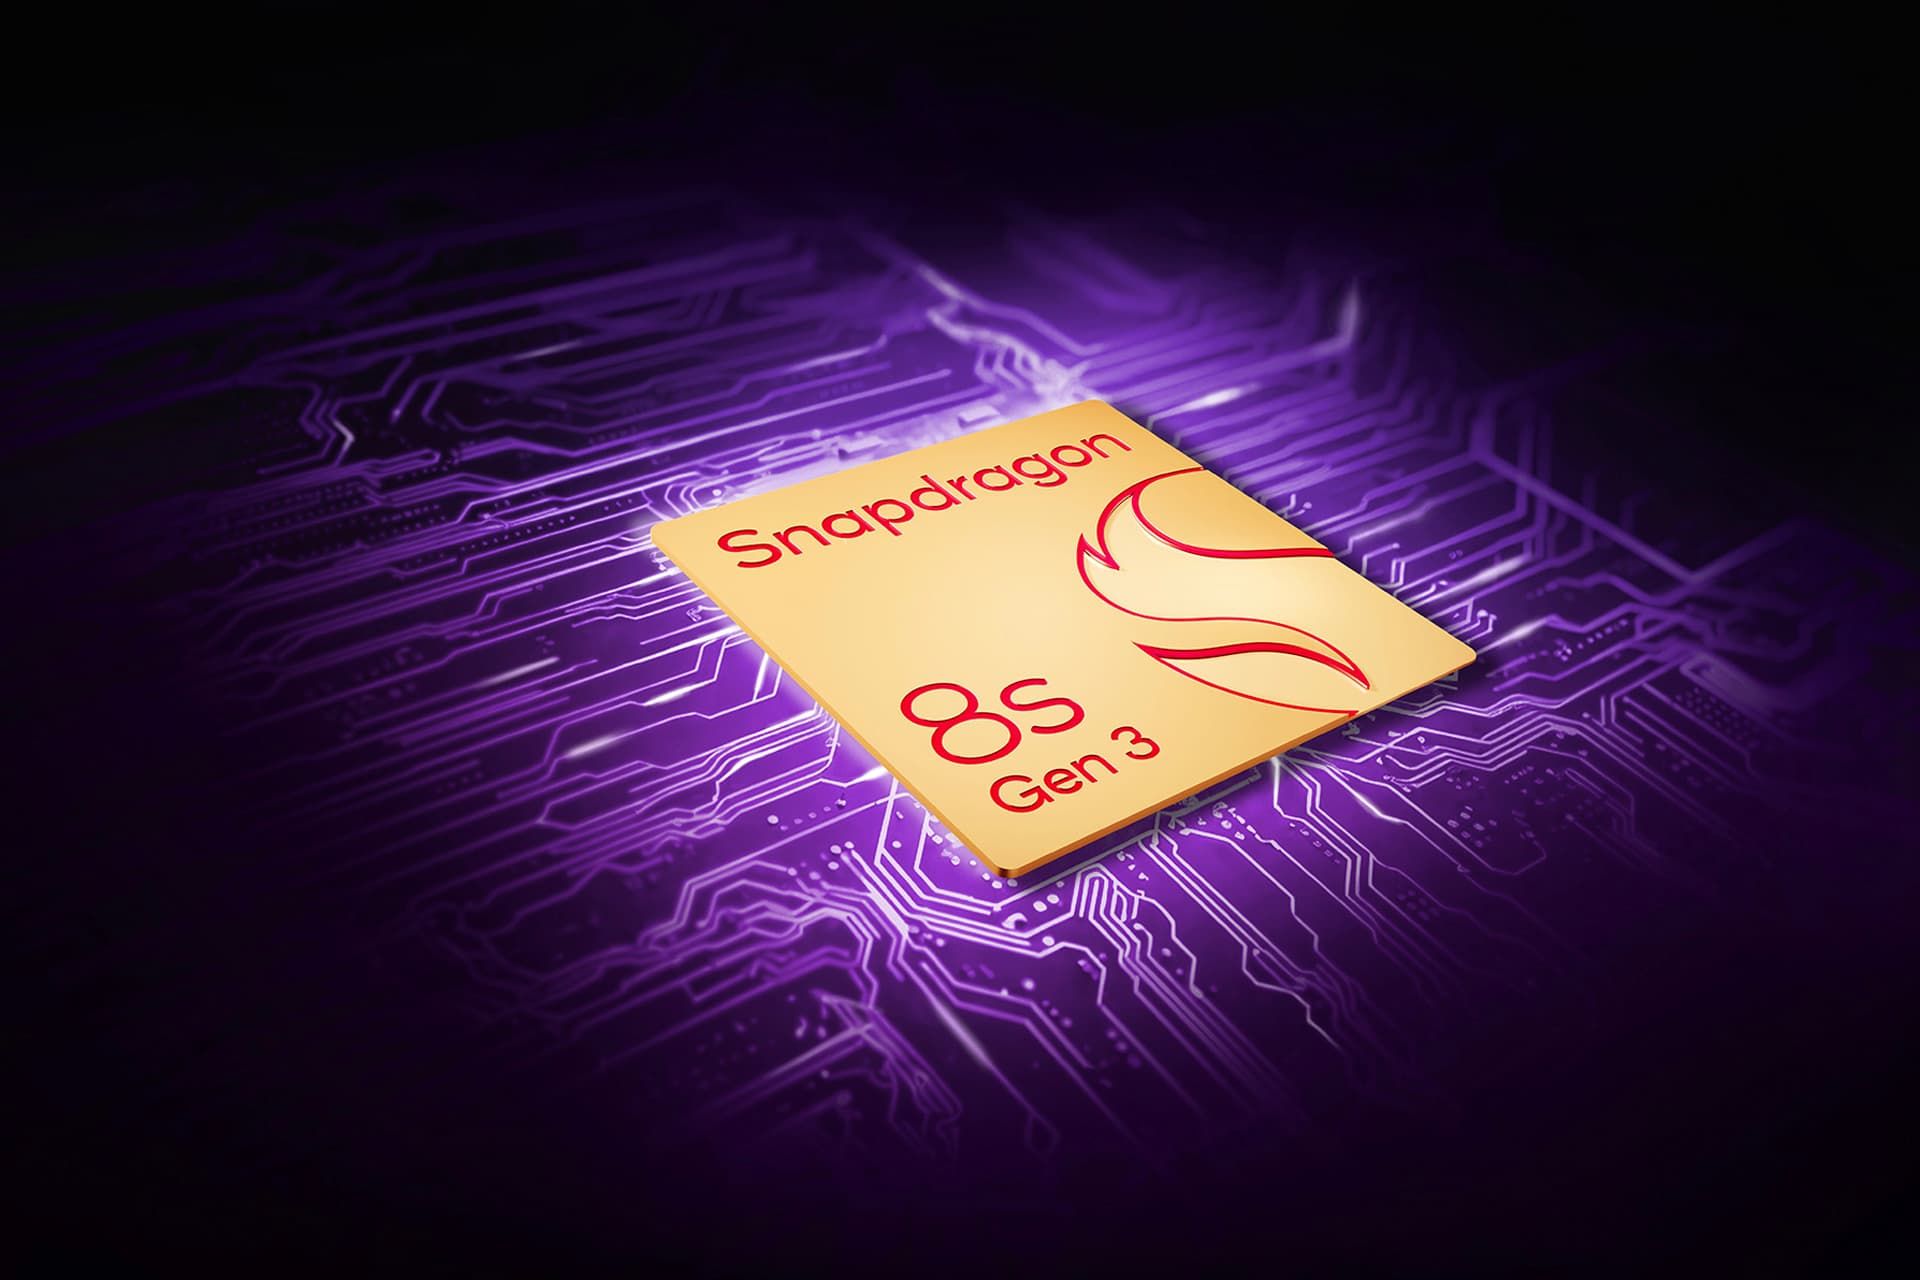 پردازنده اسنپدراگون 8s نسل ۳ کوالکام طرح گرافیکی بنفش و زرد